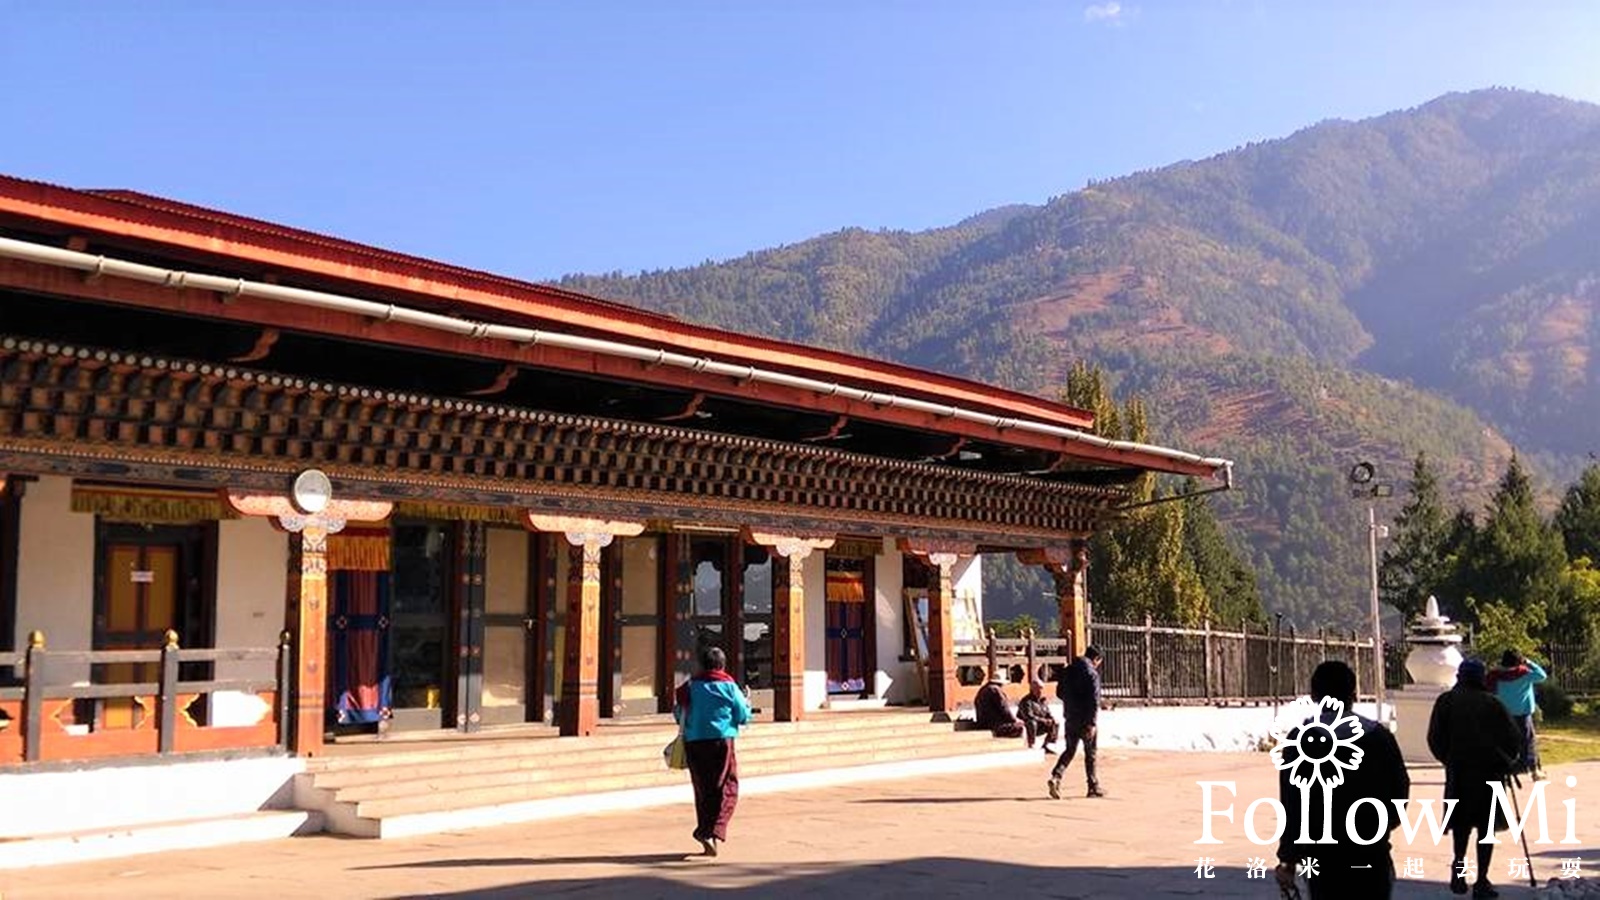 不丹國家紀念佛塔,不丹國王,不丹旅遊,不丹旅遊自由行,不丹自由行,扎西丘宗